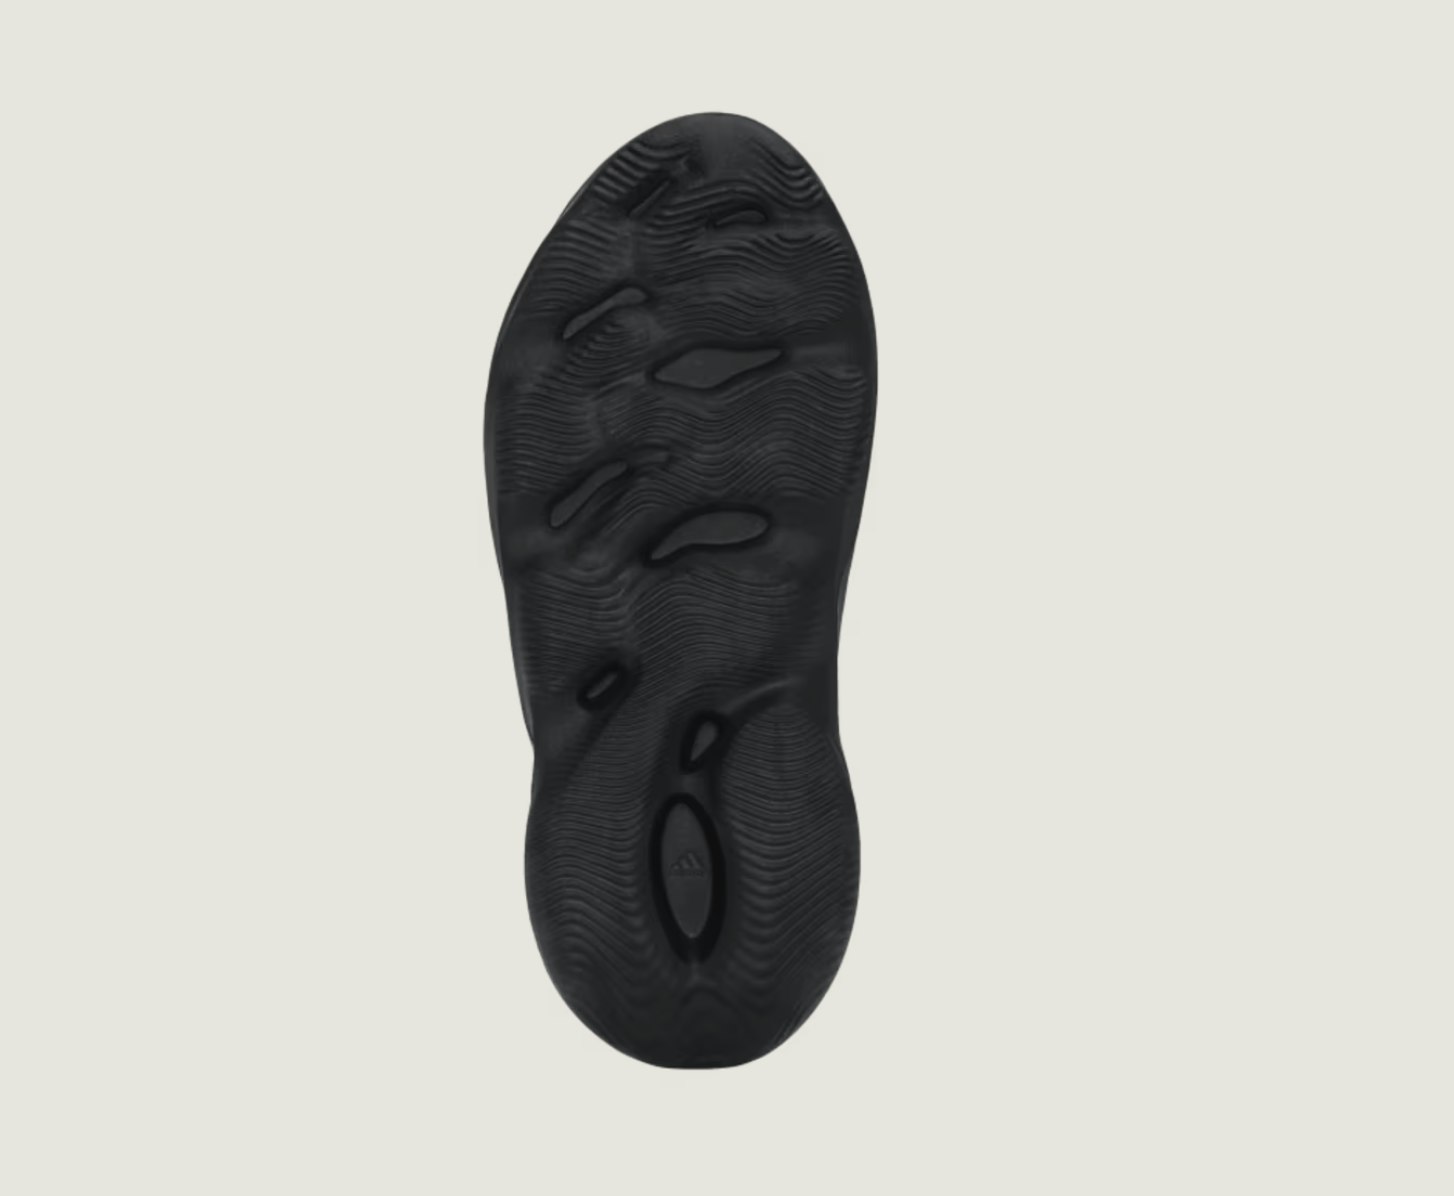 adidas Yeezy Foam Runner "Onyx"